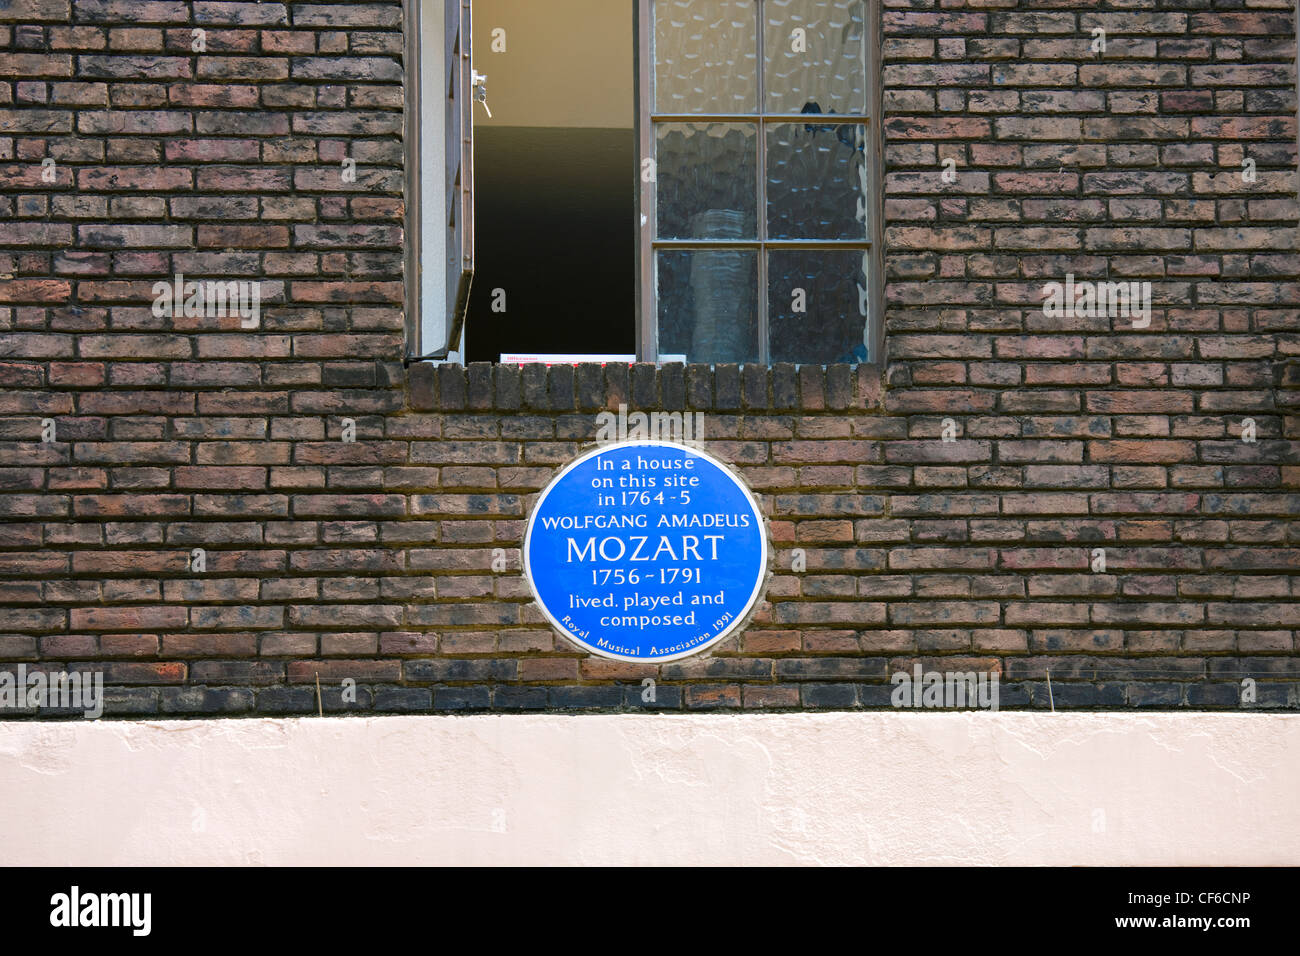 Una herencia Inglesa azul placa en la pared de una casa indicando que vivió Mozart, interpretada y compuesta en este sitio 1764-5. Foto de stock